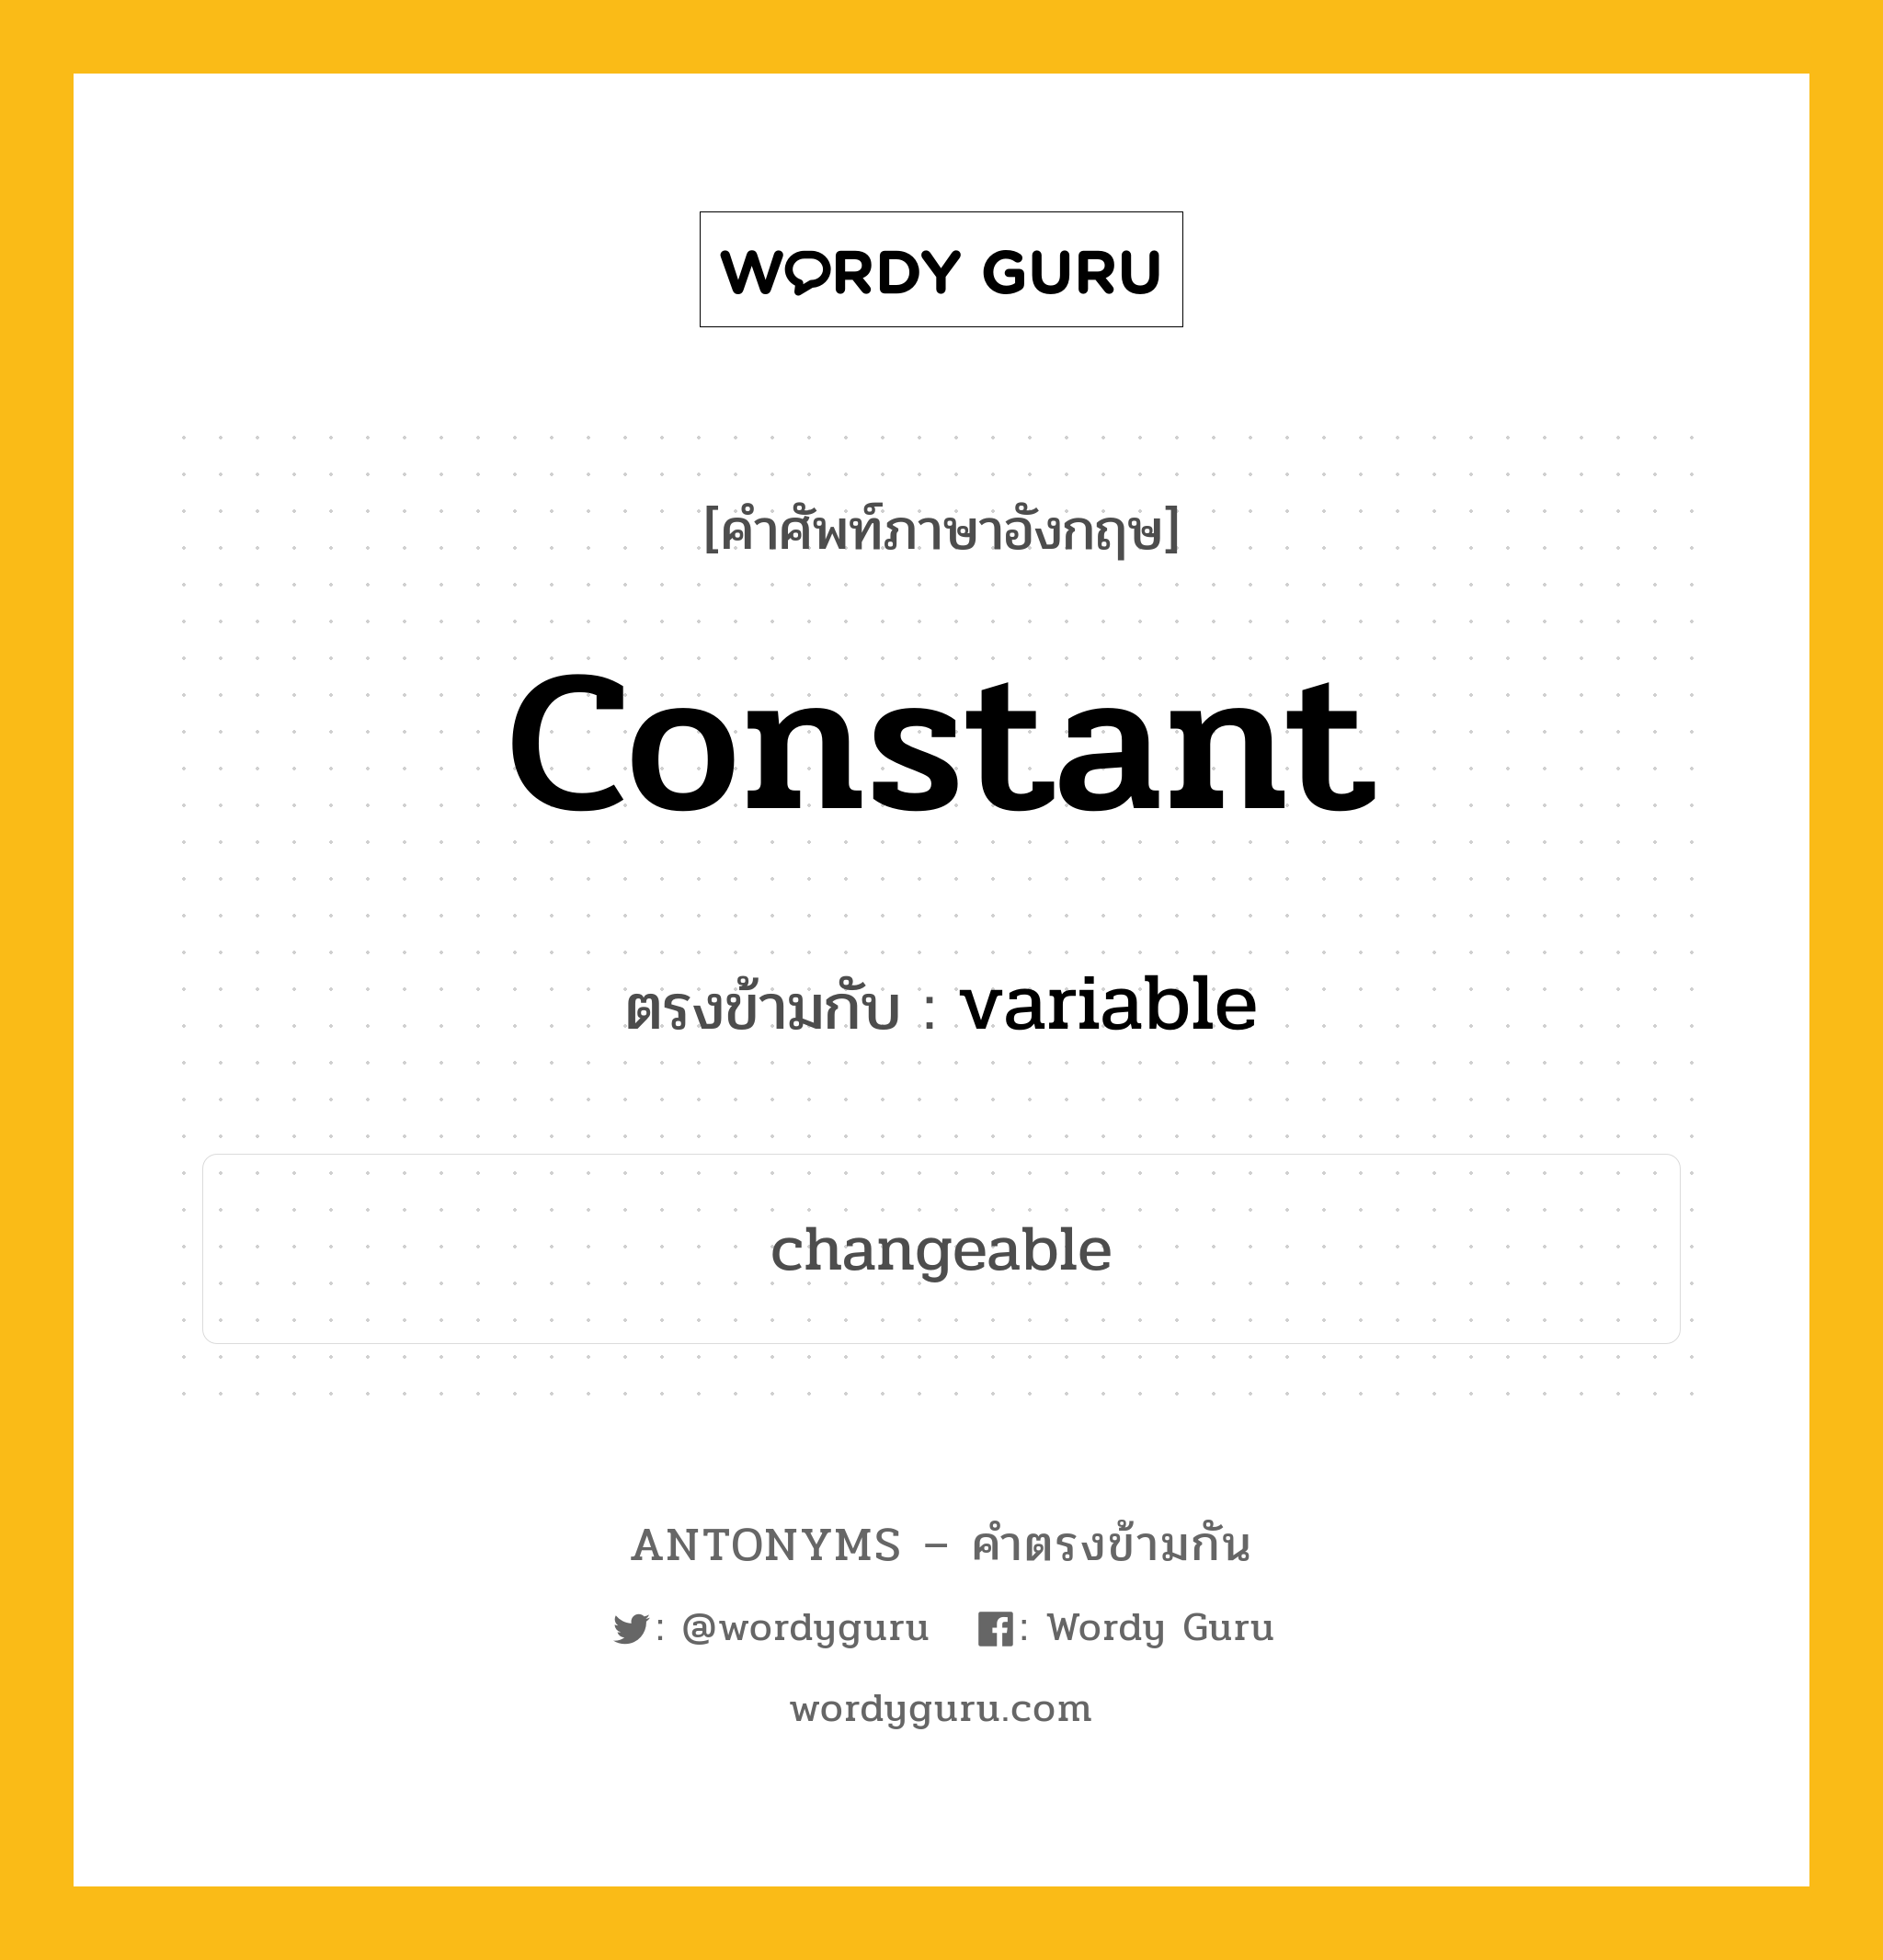 constant เป็นคำตรงข้ามกับคำไหนบ้าง?, คำศัพท์ภาษาอังกฤษ constant ตรงข้ามกับ variable หมวด variable